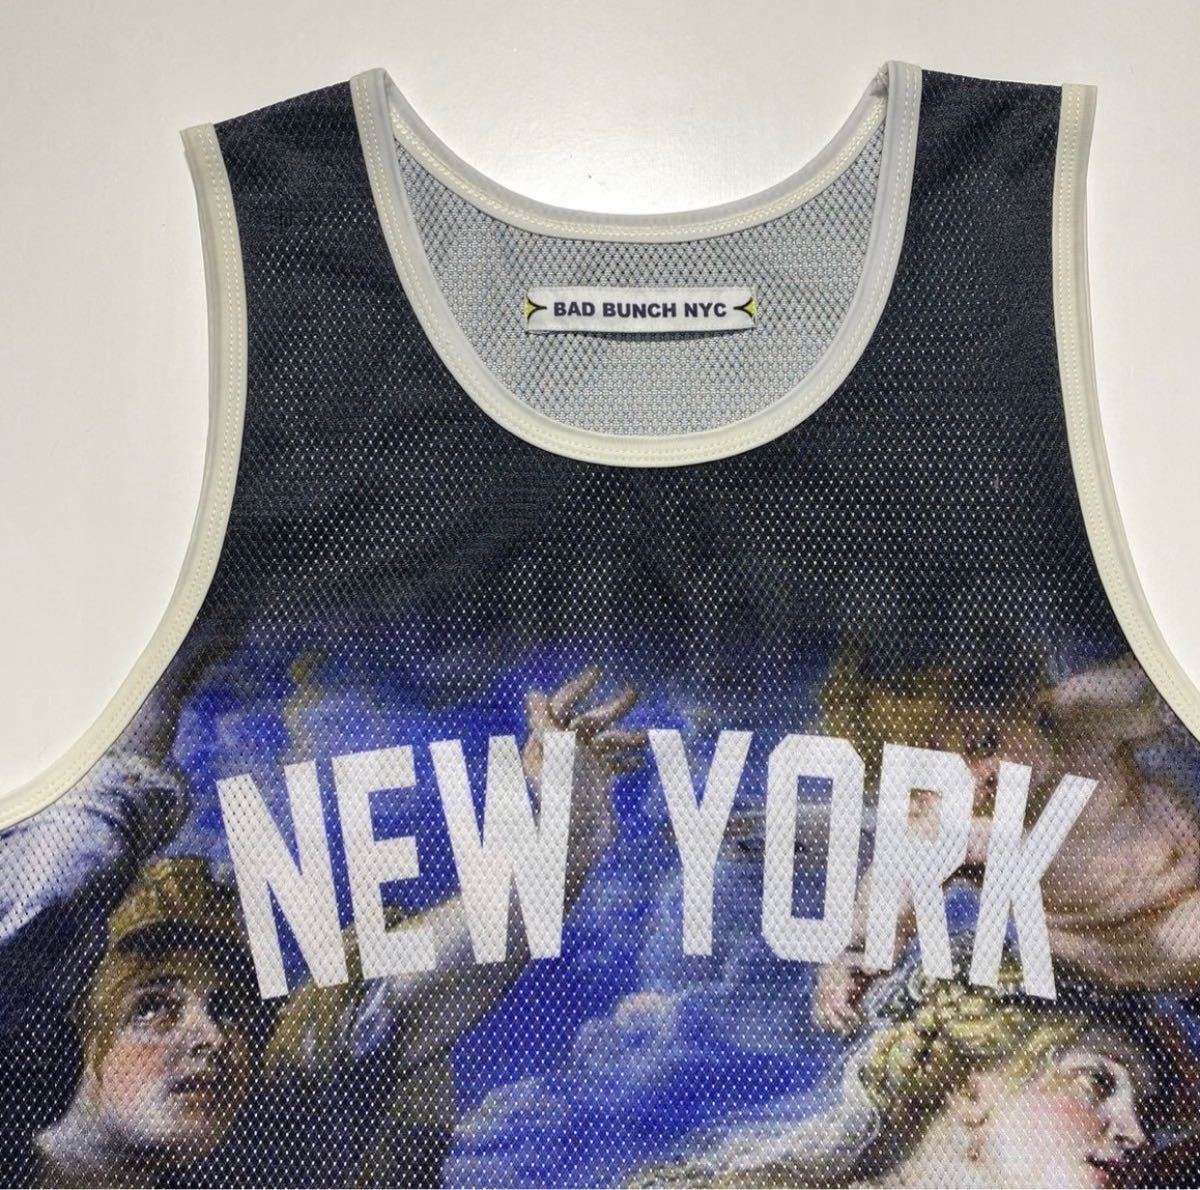 BAD BUNCH NYC New York MESH TANK TOP バッドバンチ ニューヨーク メッシュ タンクトップ バスケットボールシャツ  Y706